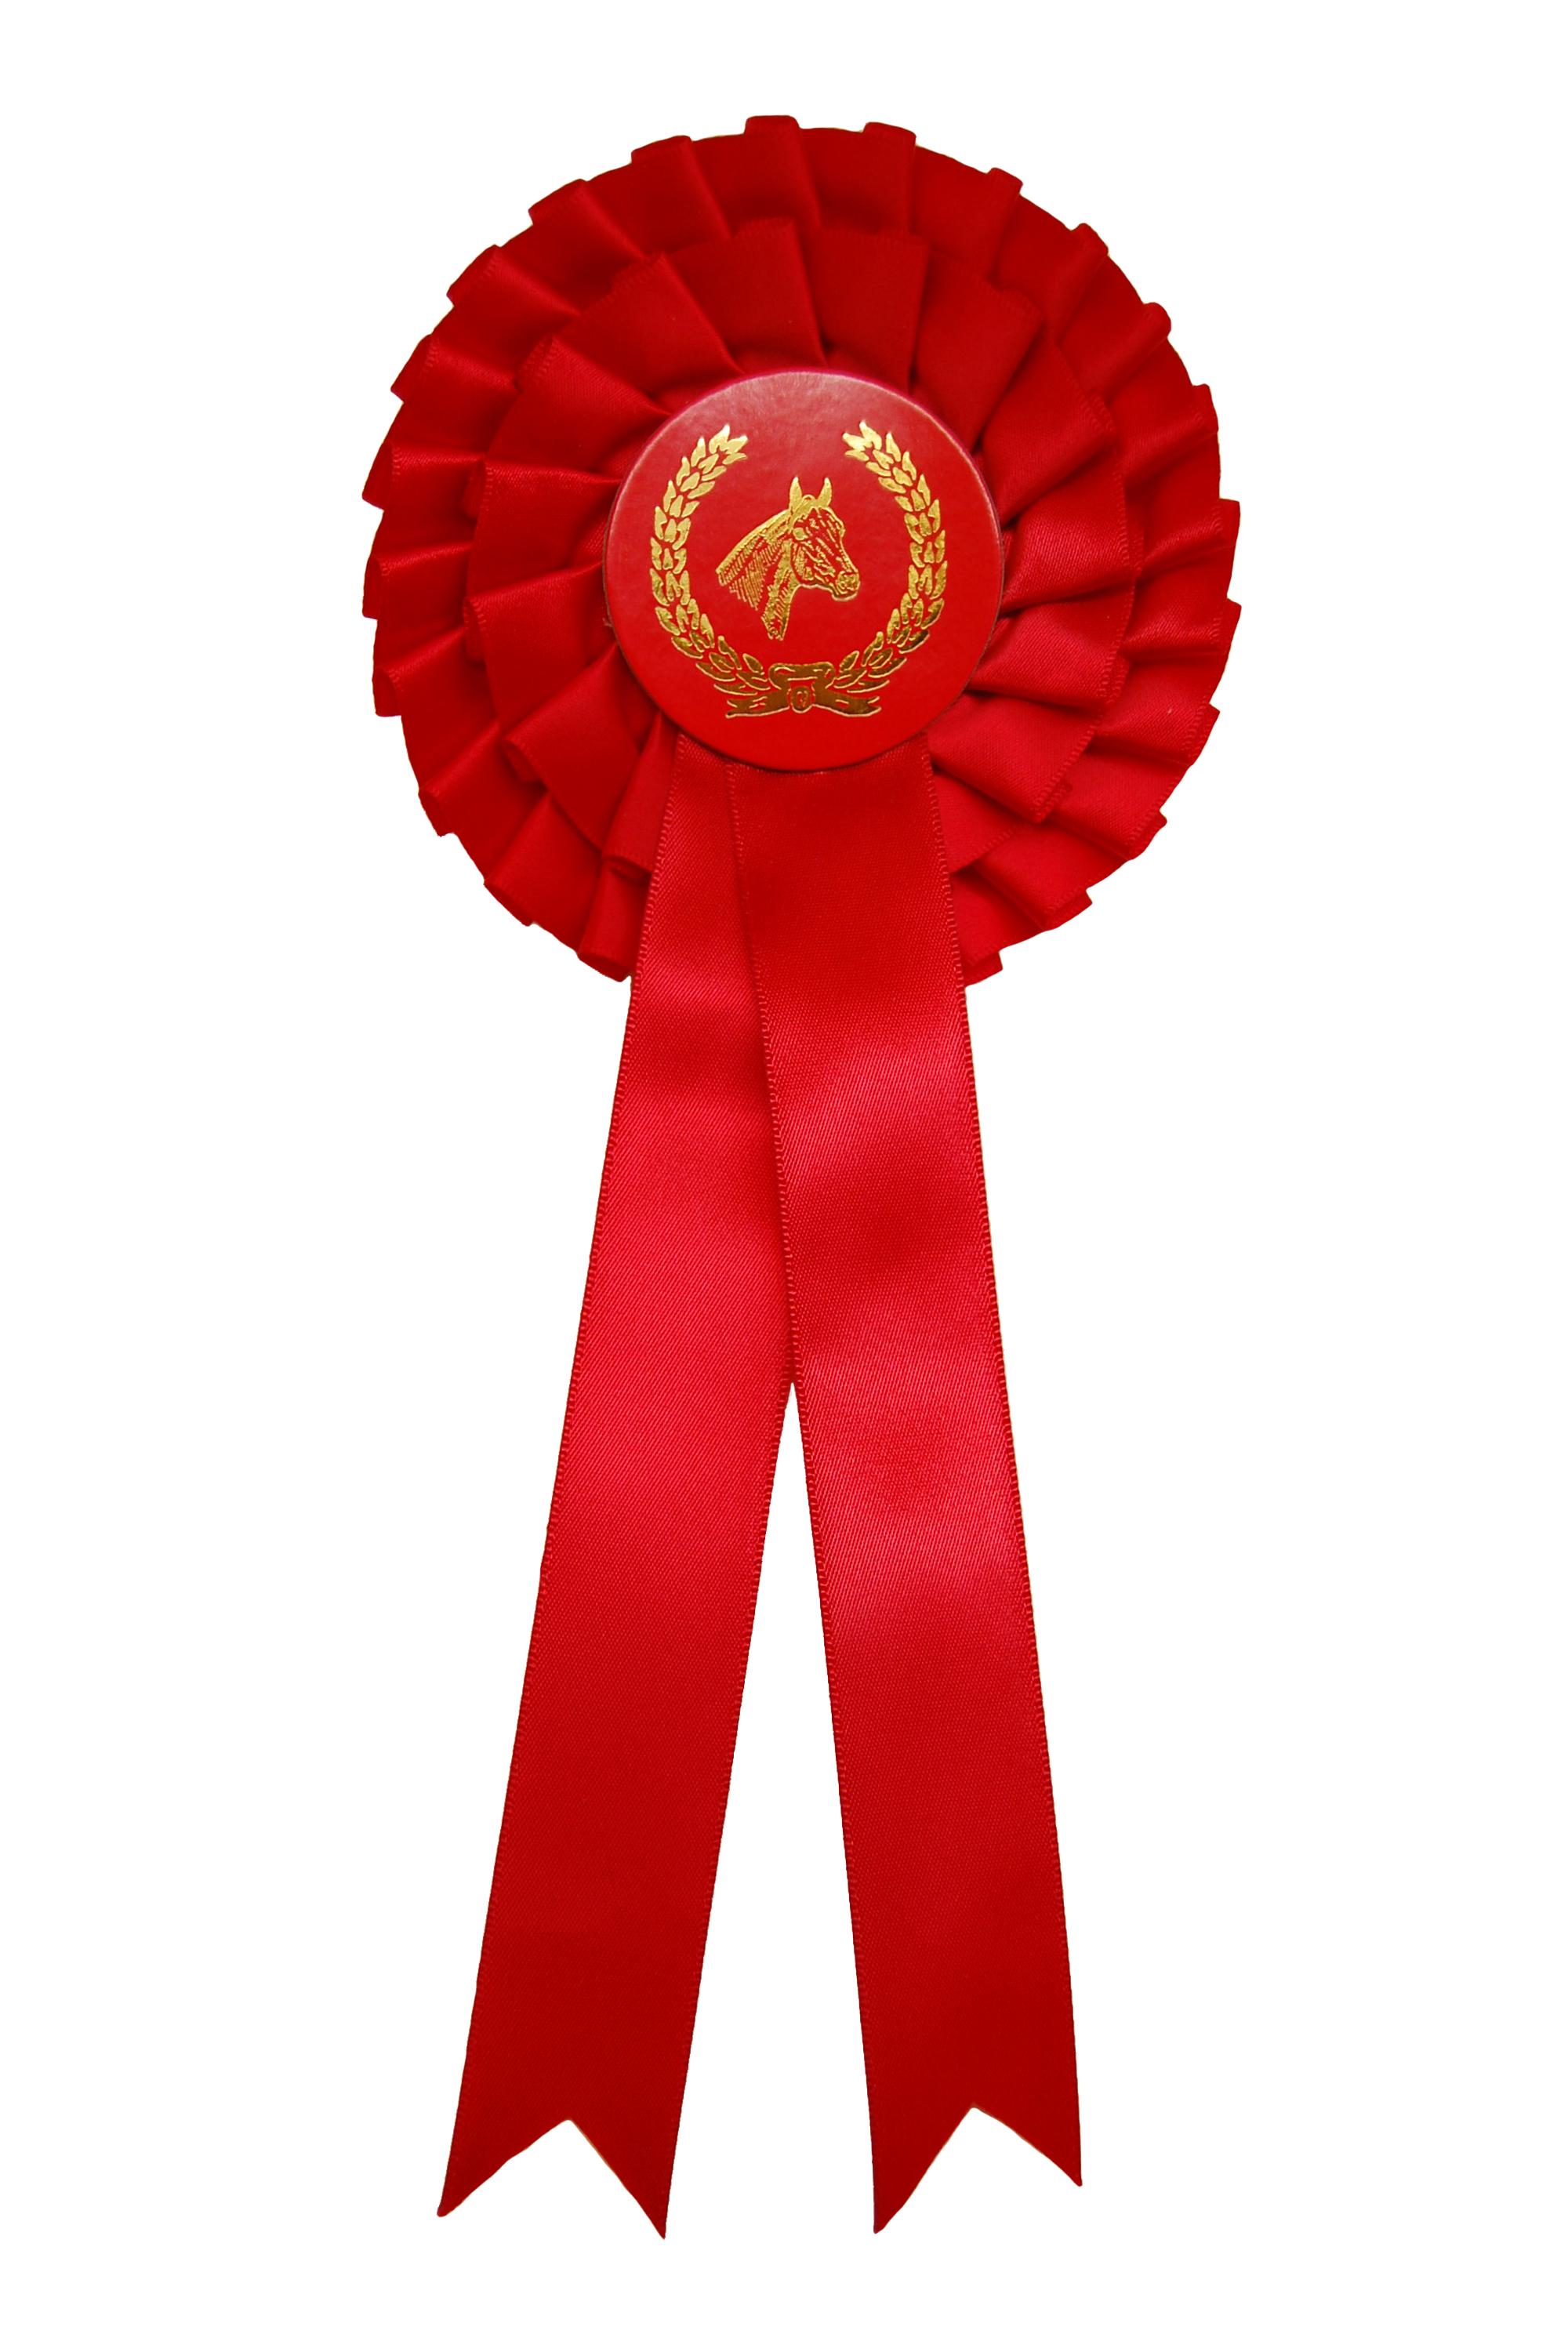 Horse rosette RED - Monomak since 1977